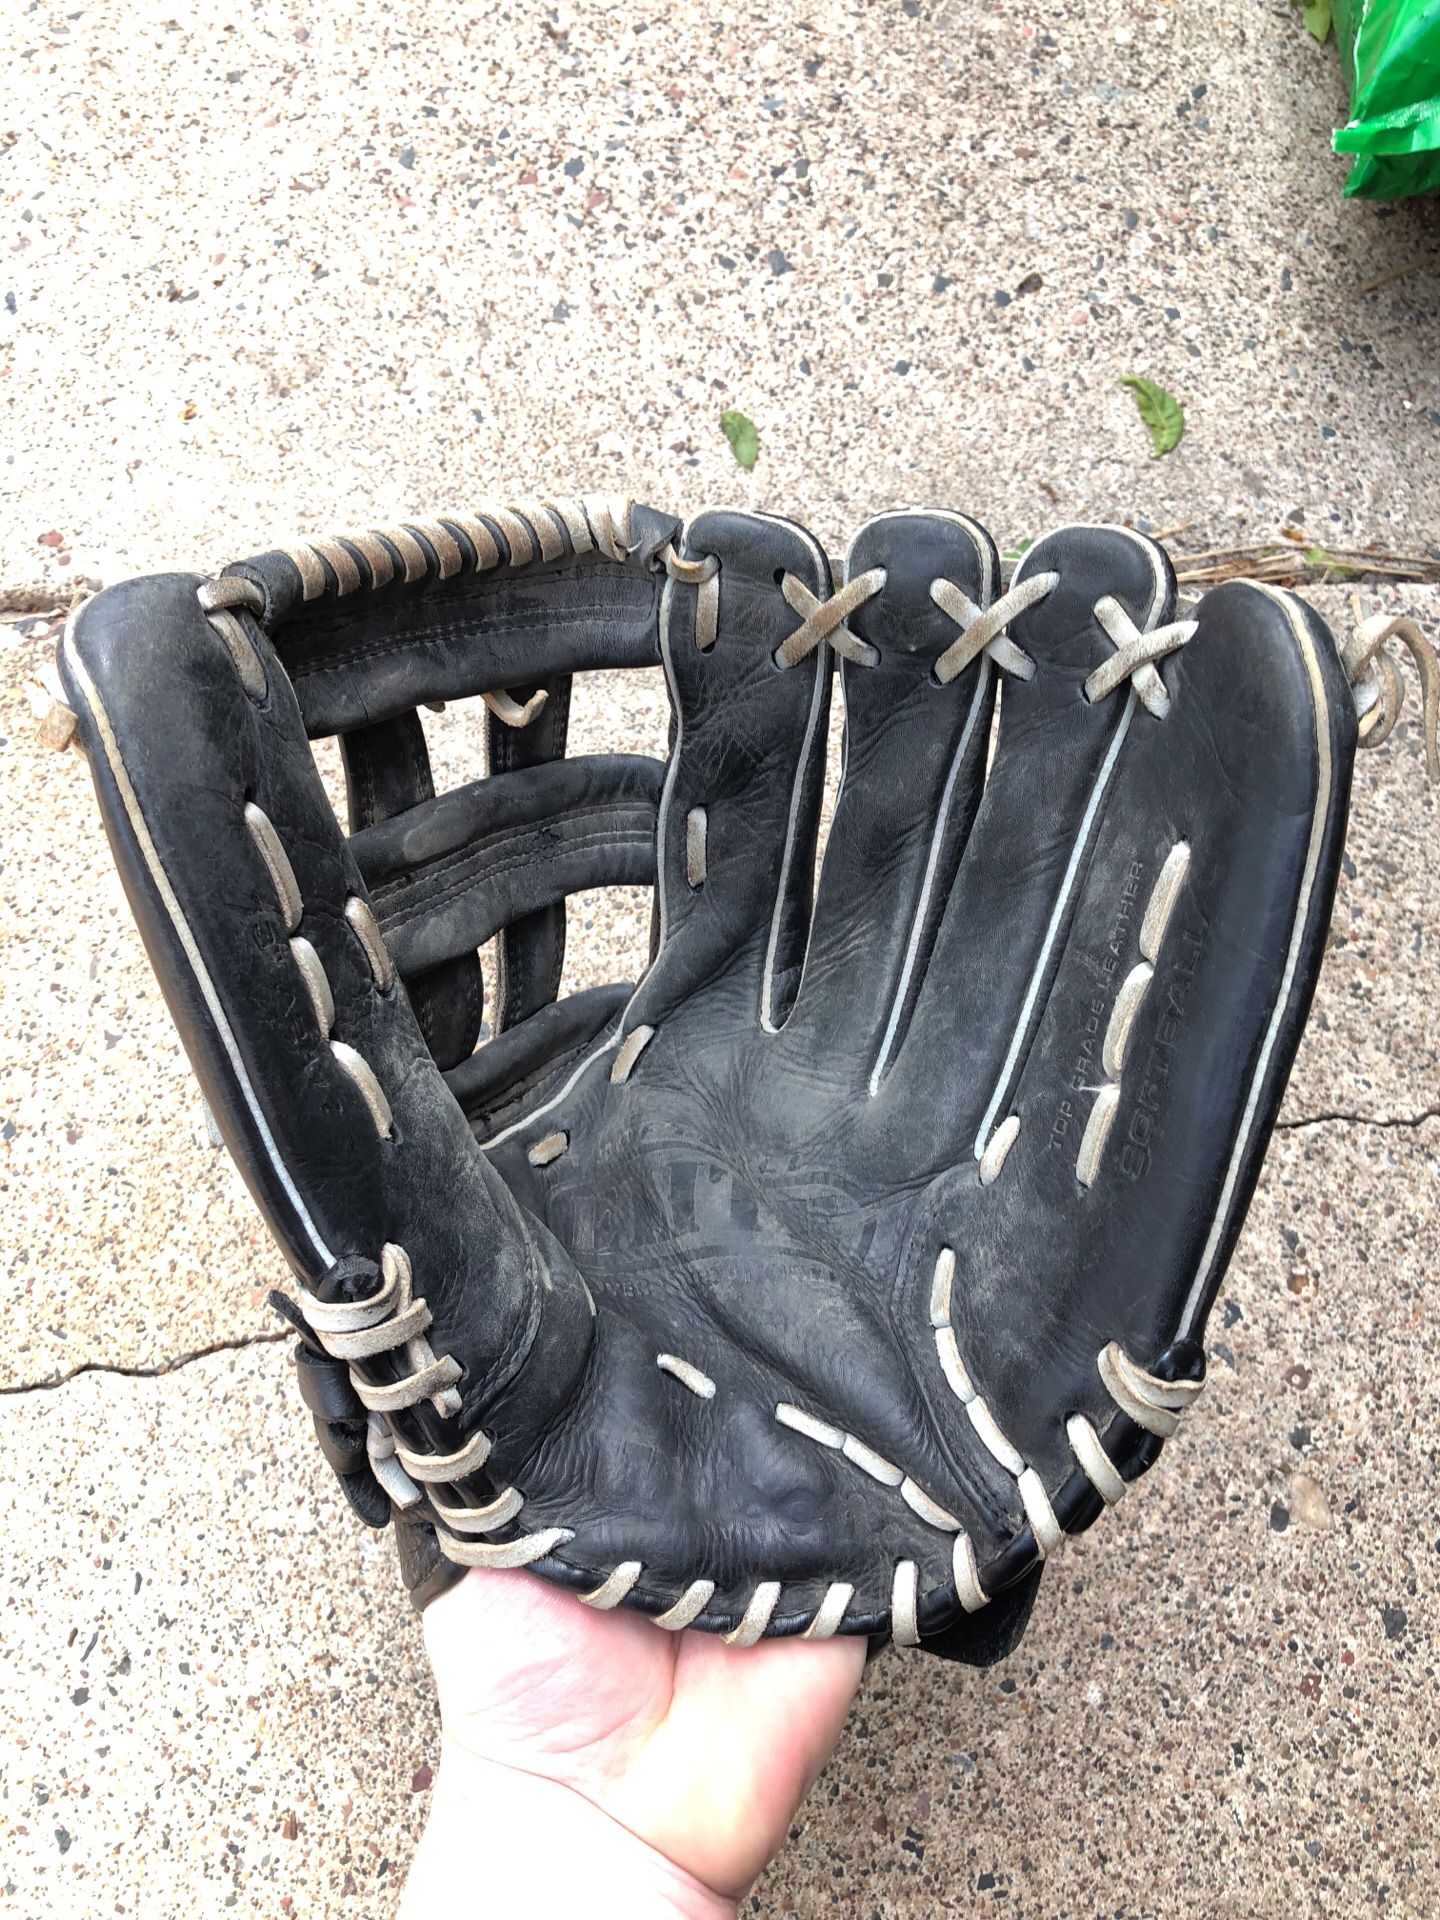 Wilson Elite men’s softball glove